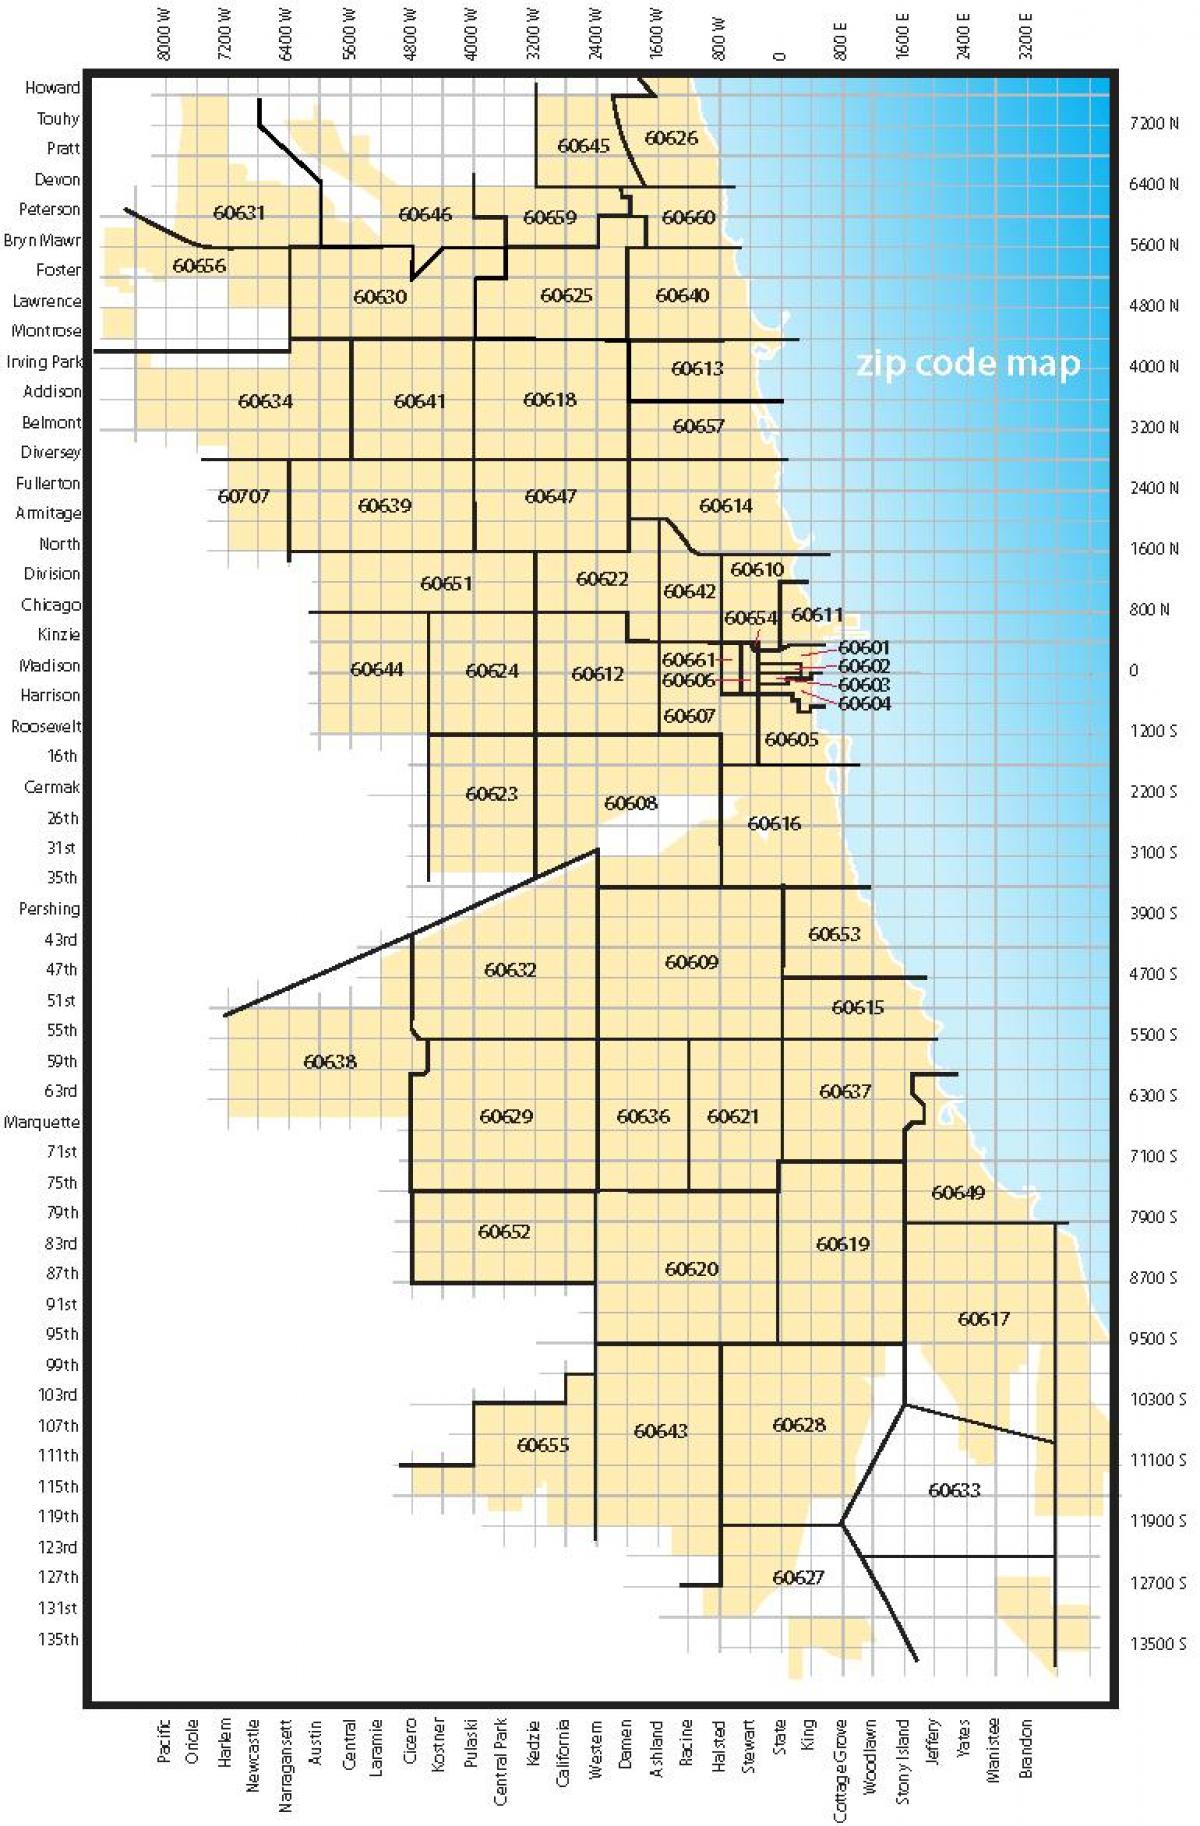 Chicago código área mapa